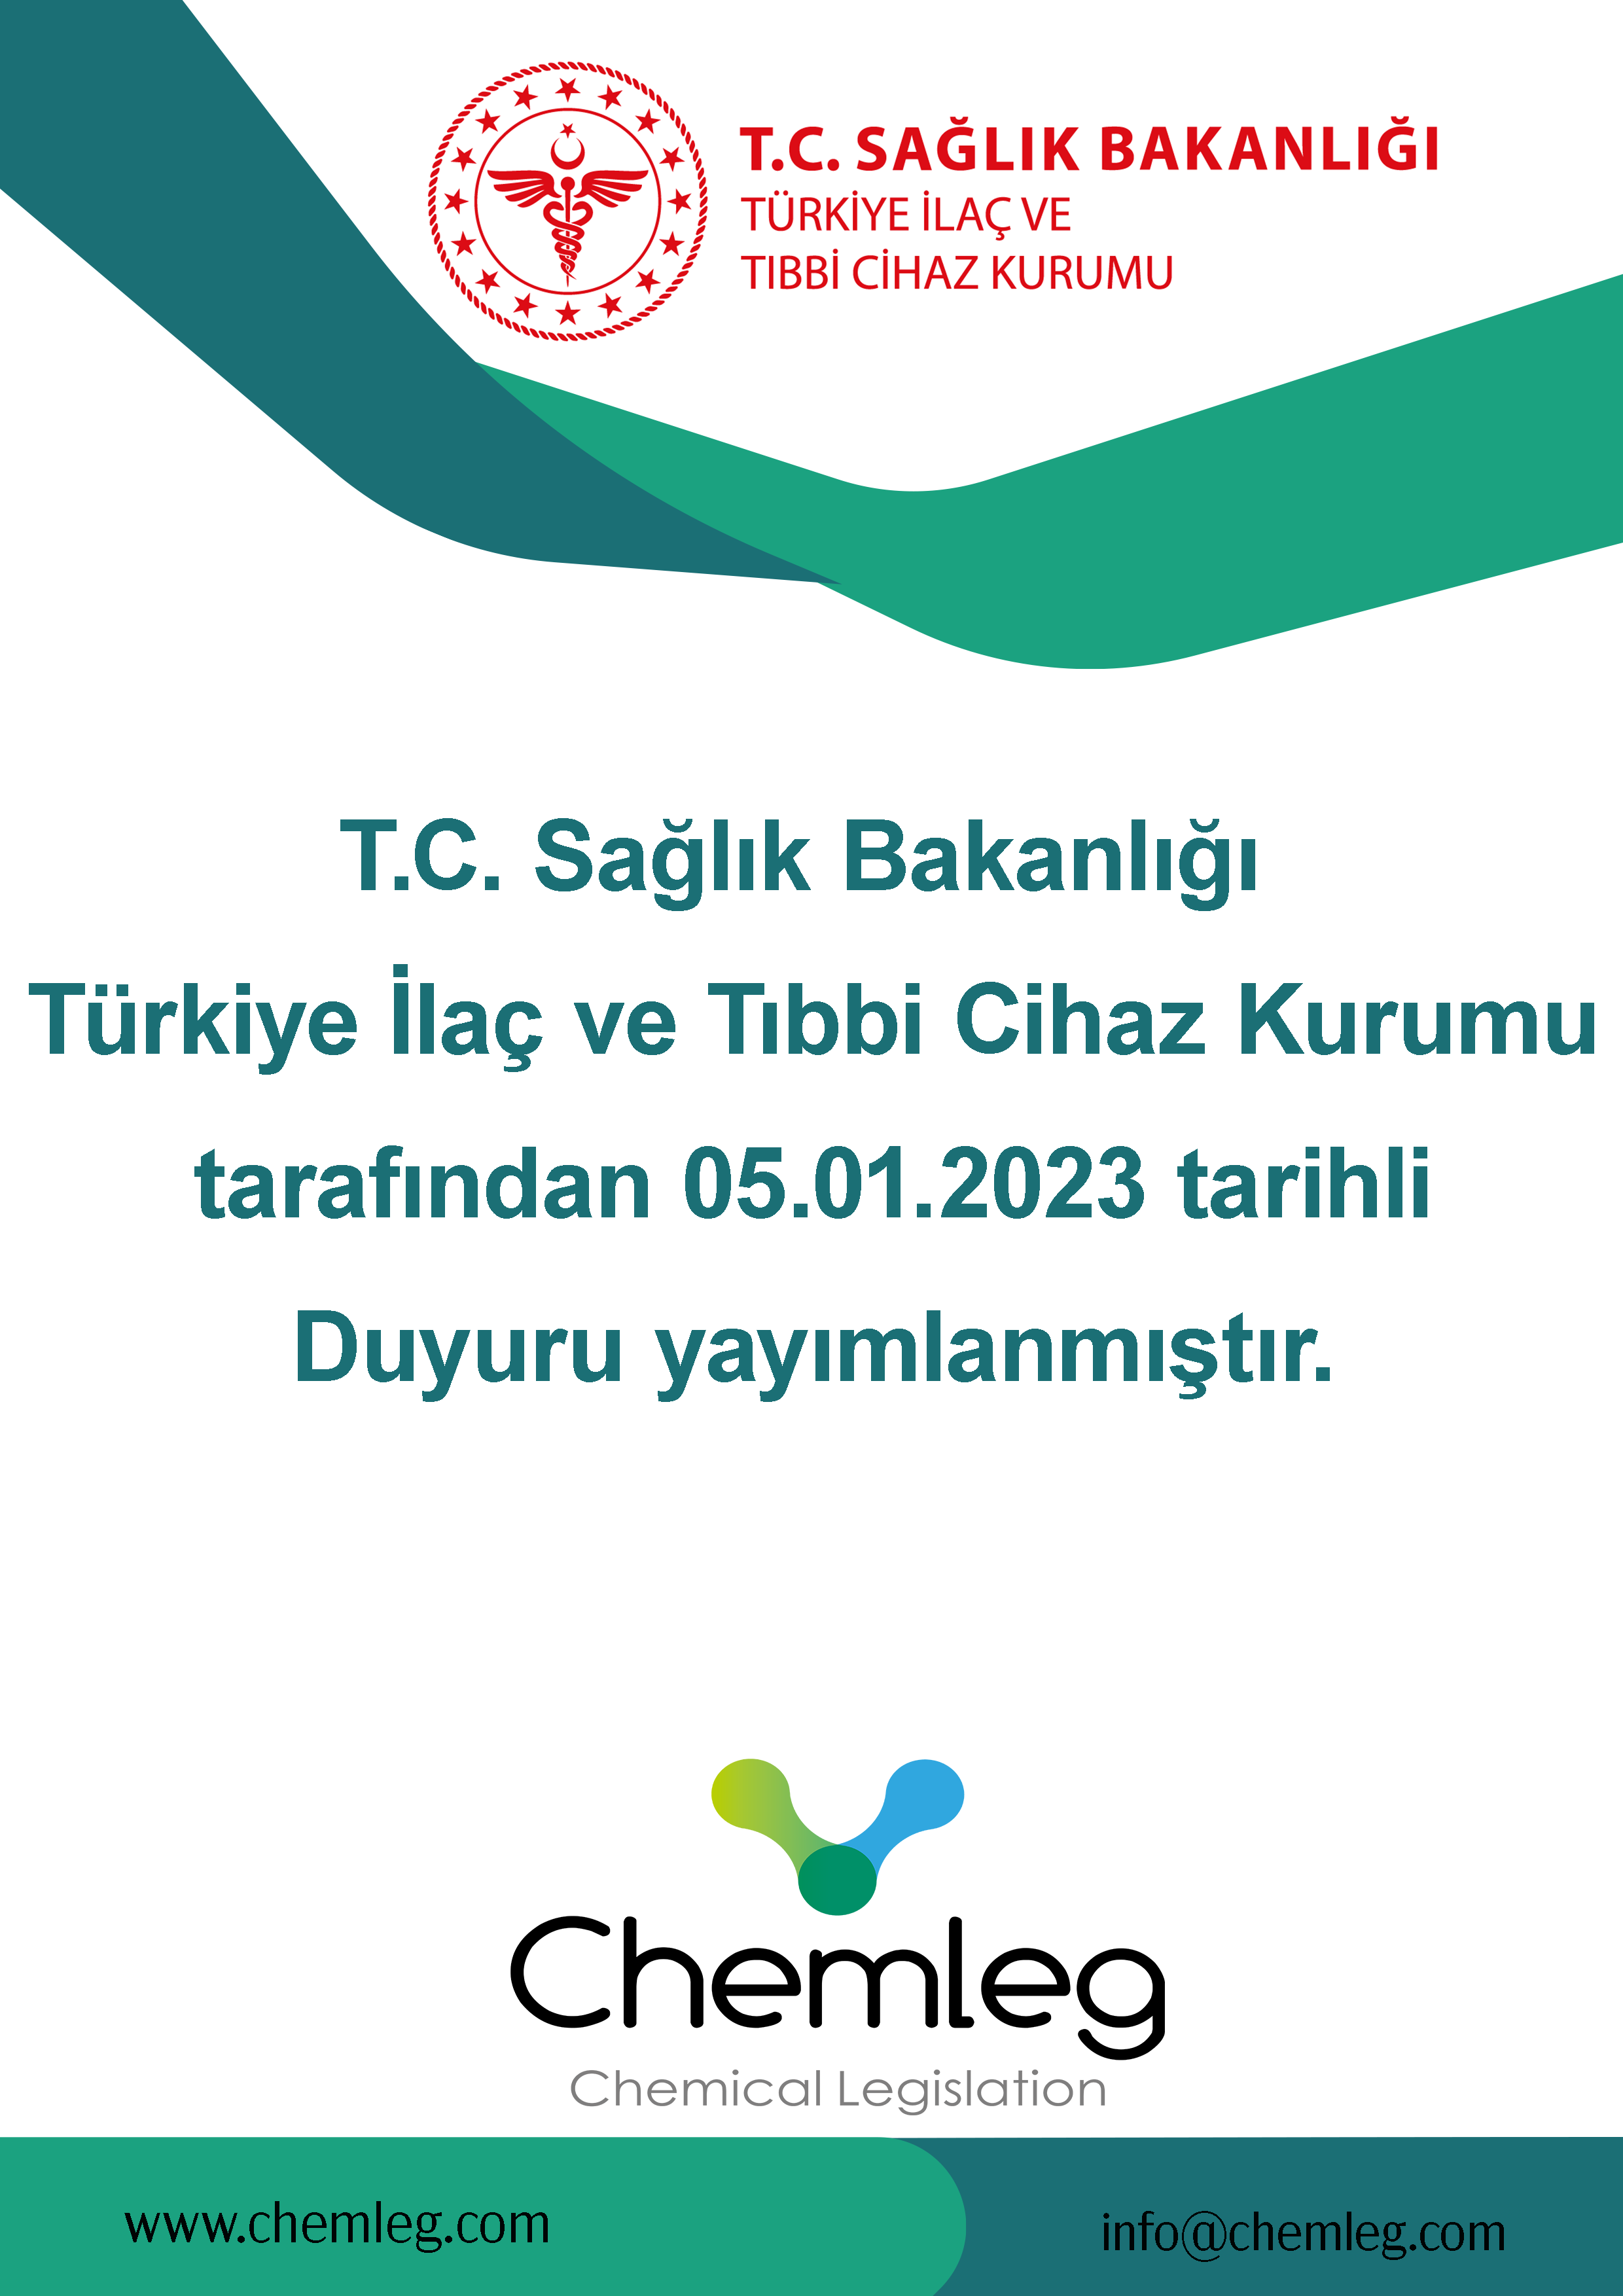 T.C. Sağlık Bakanlığı Türkiye İlaç ve Tıbbi Cihaz Kurumu tarafından 05.01.2023 tarihli Duyuru yayımlanmıştır.